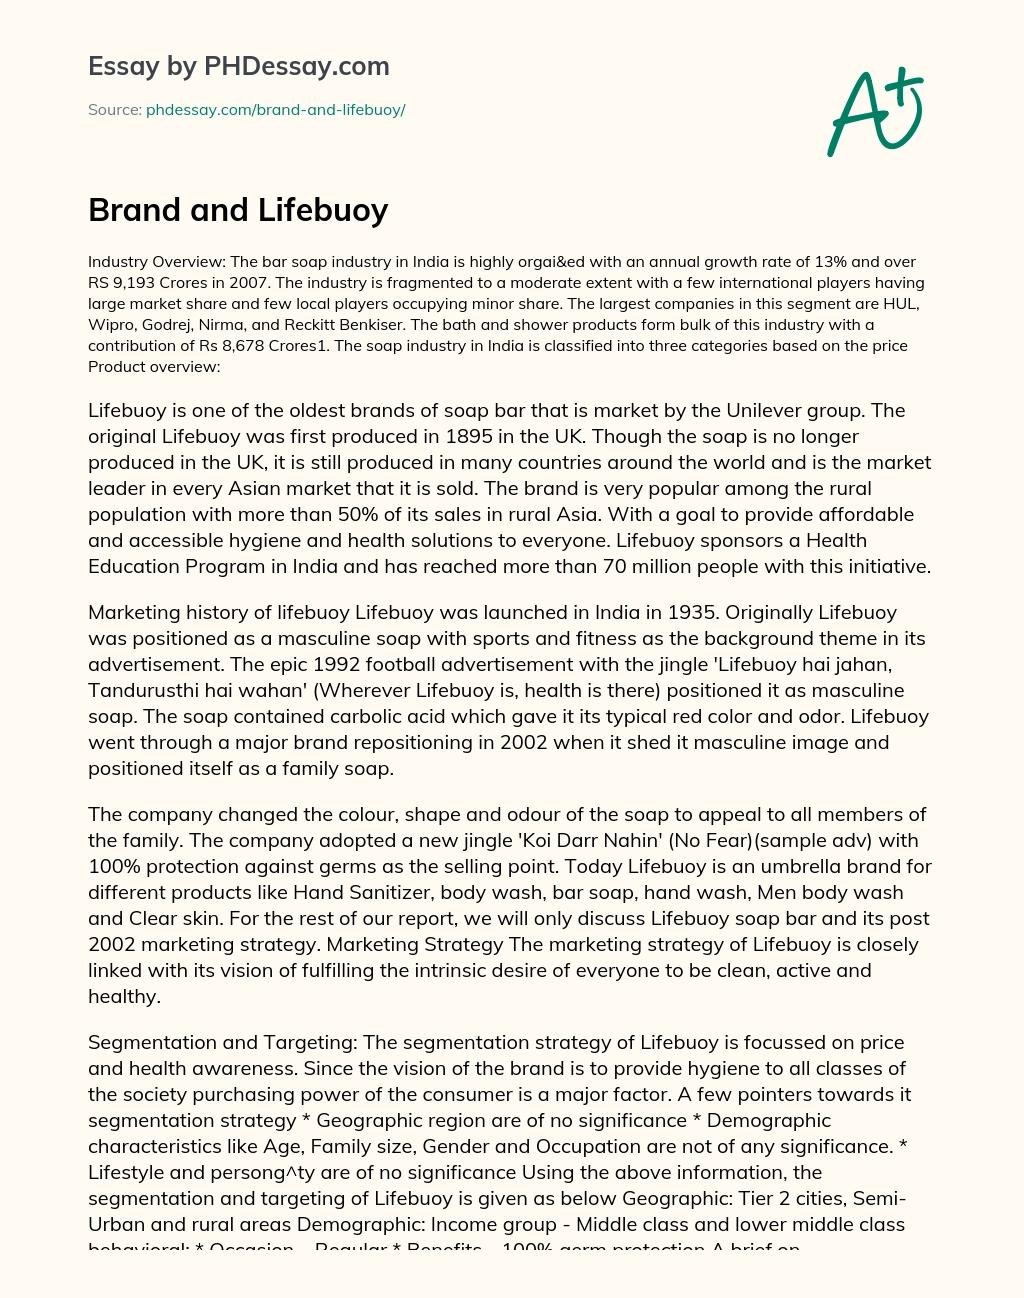 Brand and Lifebuoy essay